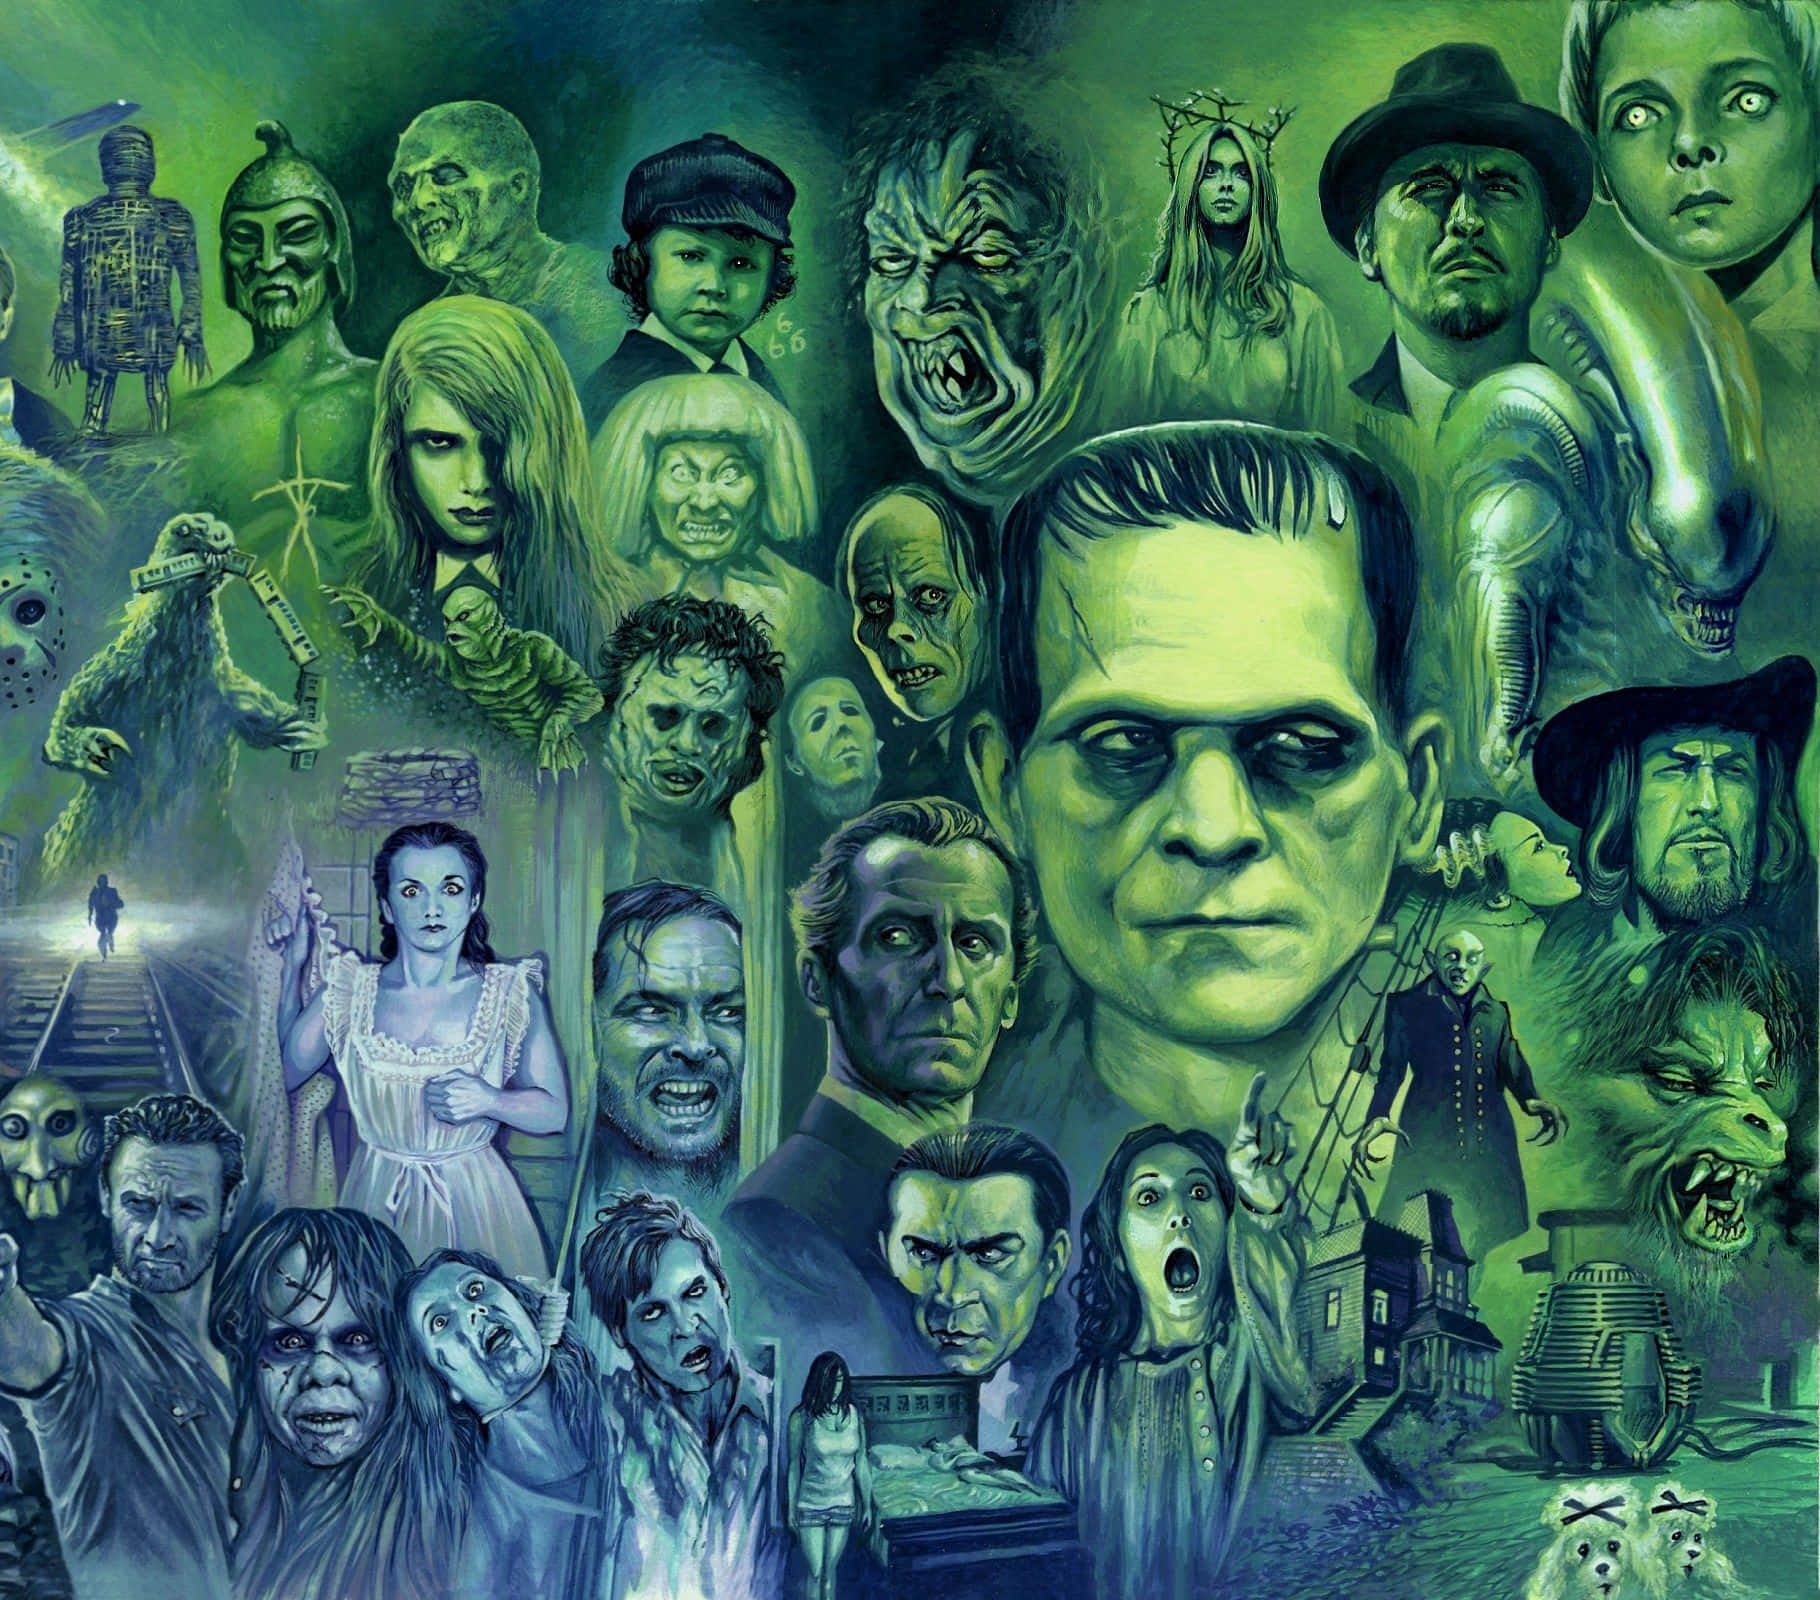 Et billede af Frankenstein-monsterne, der angriber hinanden. Wallpaper